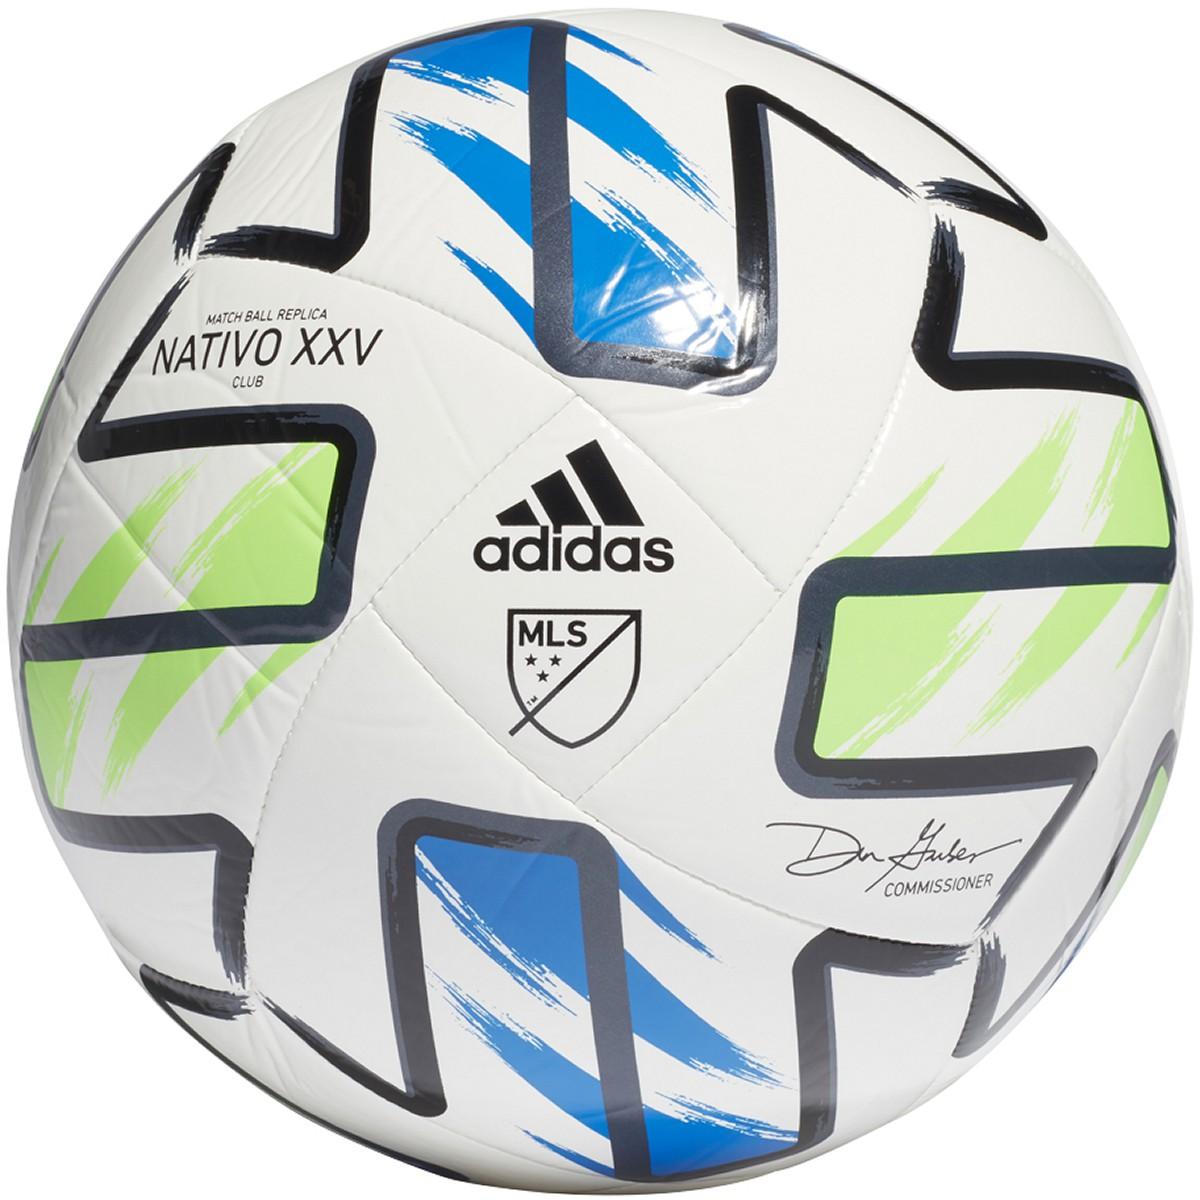 Soccer Plus | adidas adidas MLS Nativo XXV Club Ball 2020